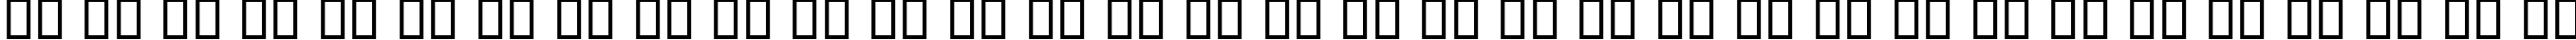 Пример написания русского алфавита шрифтом B Esfehan Bold